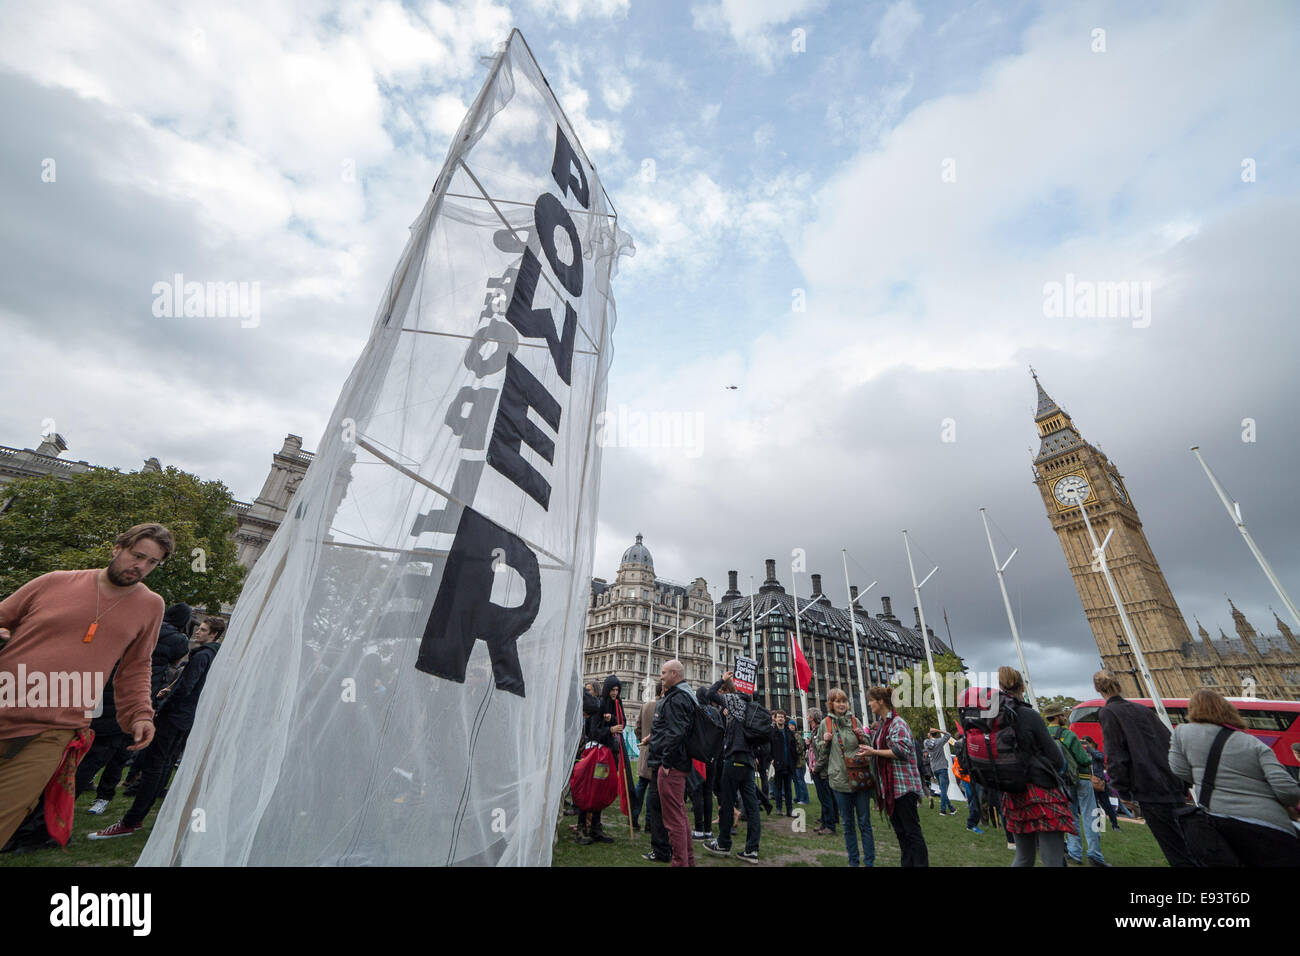 Londres, Reino Unido. 18 Oct, 2014. El día dos de ocupar la democracia campamento en la Plaza del Parlamento: Guy Corbishley de crédito/Alamy Live News Foto de stock